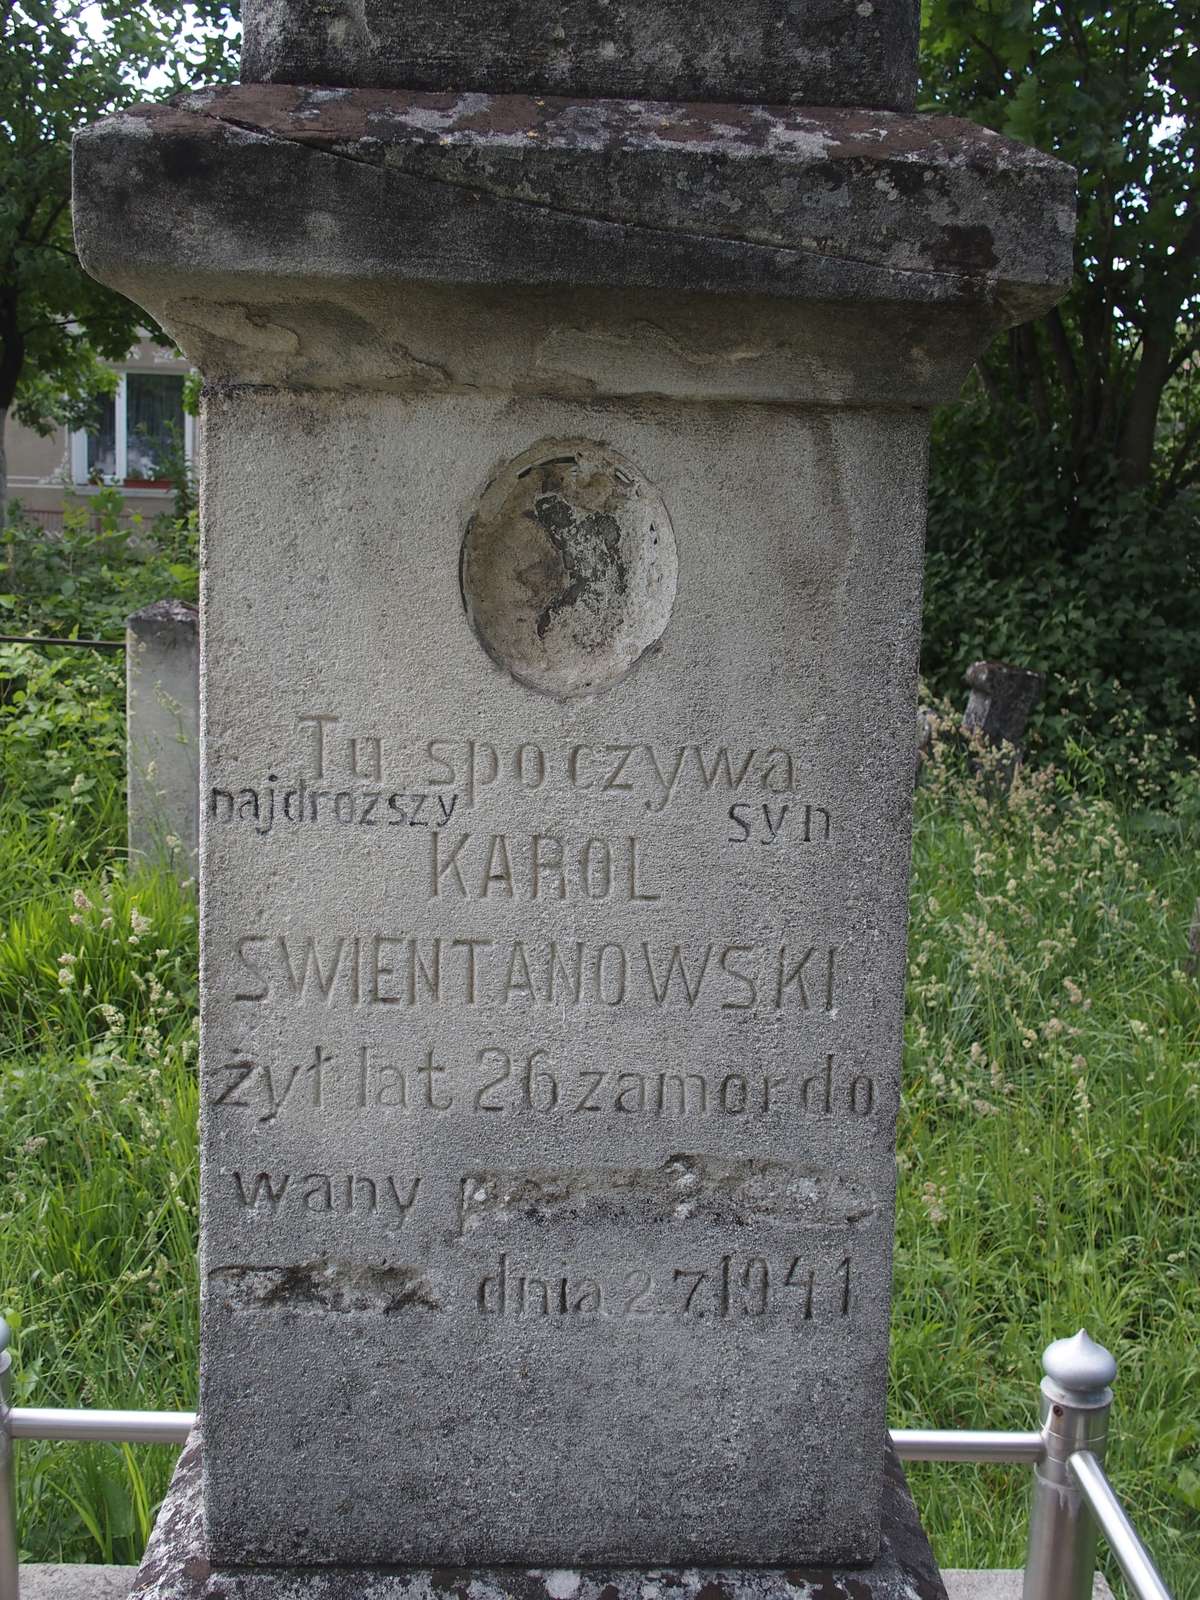 Tomb of Karol Swientanowski, Zbarazh cemetery, as of 2018.